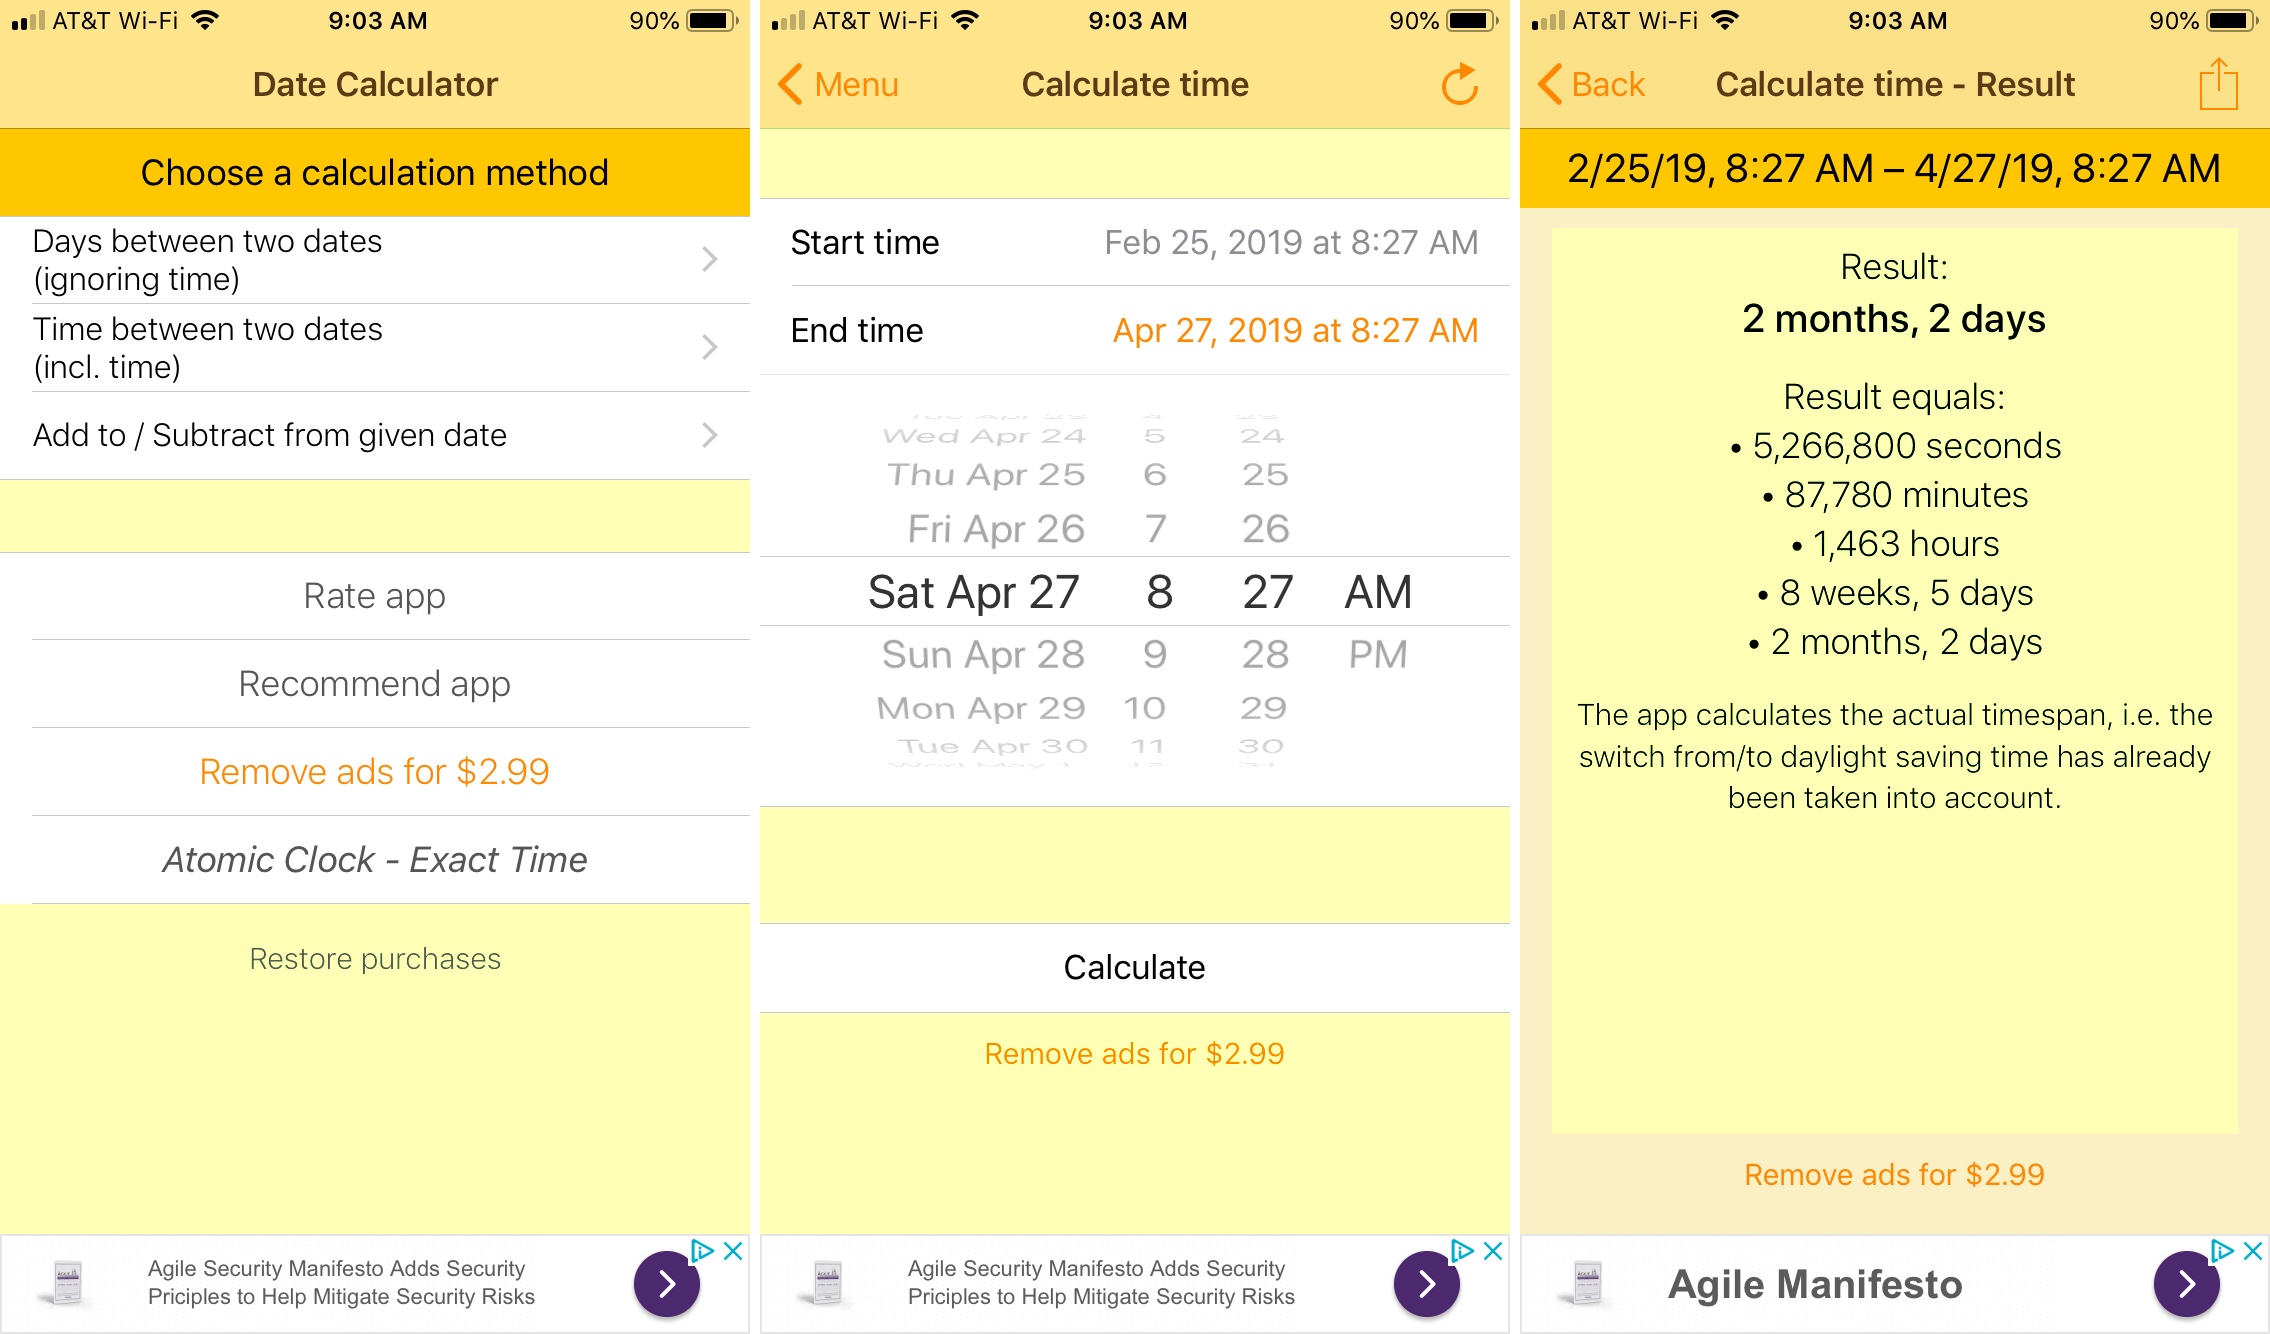 The Date Calculator Pro app iPhone